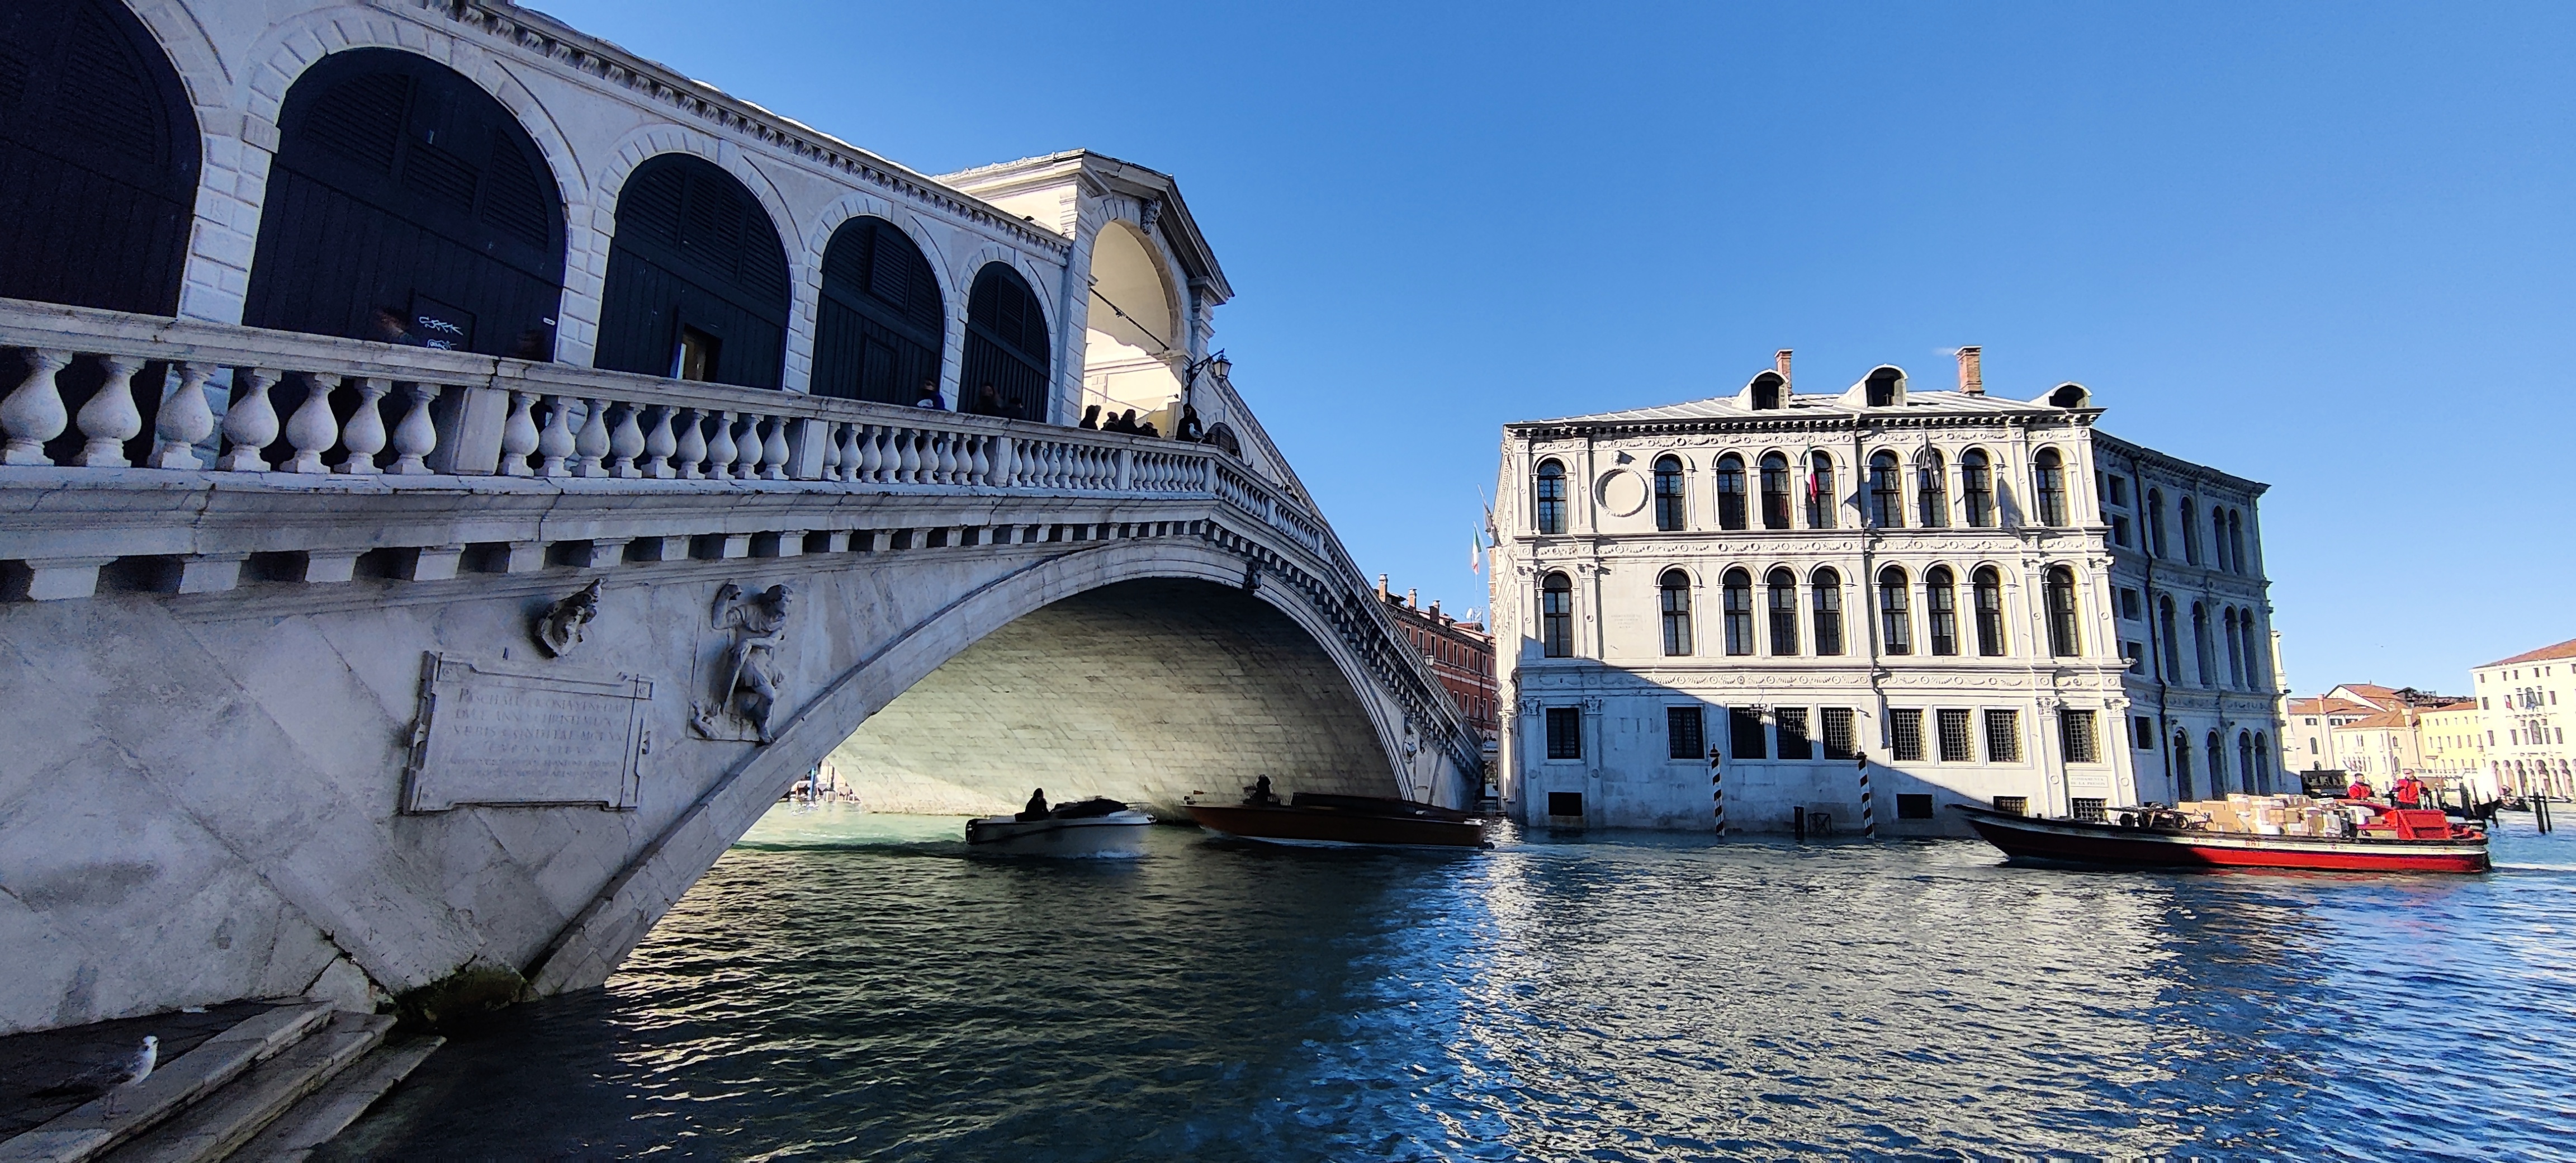 Puente de Rialto - Venecia en 3 días